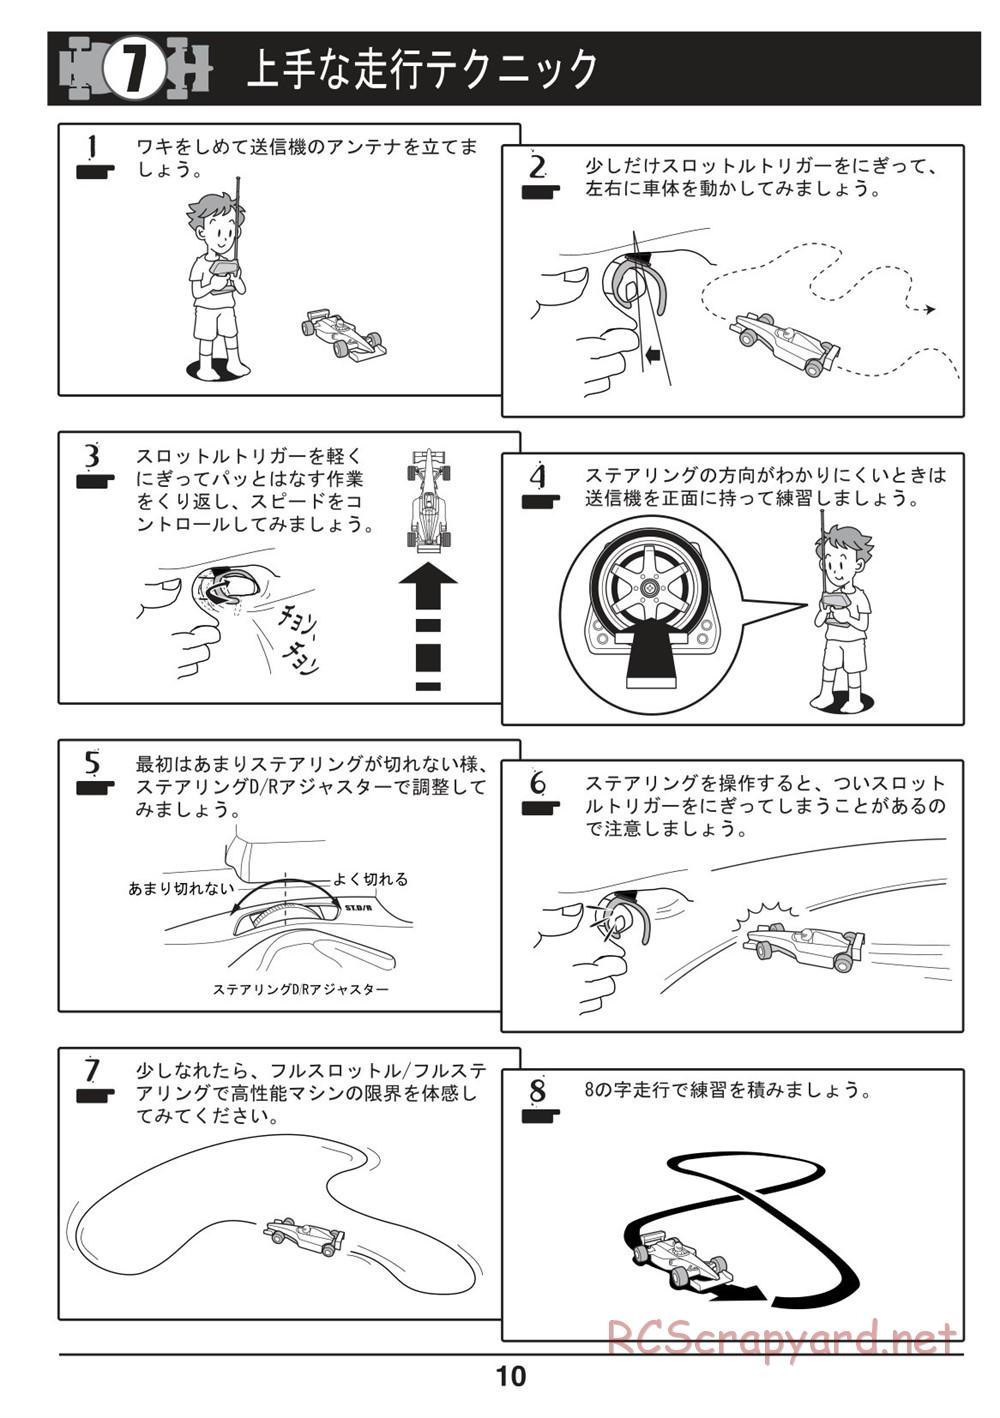 Kyosho - Mini-Z F1 - Manual - Page 10